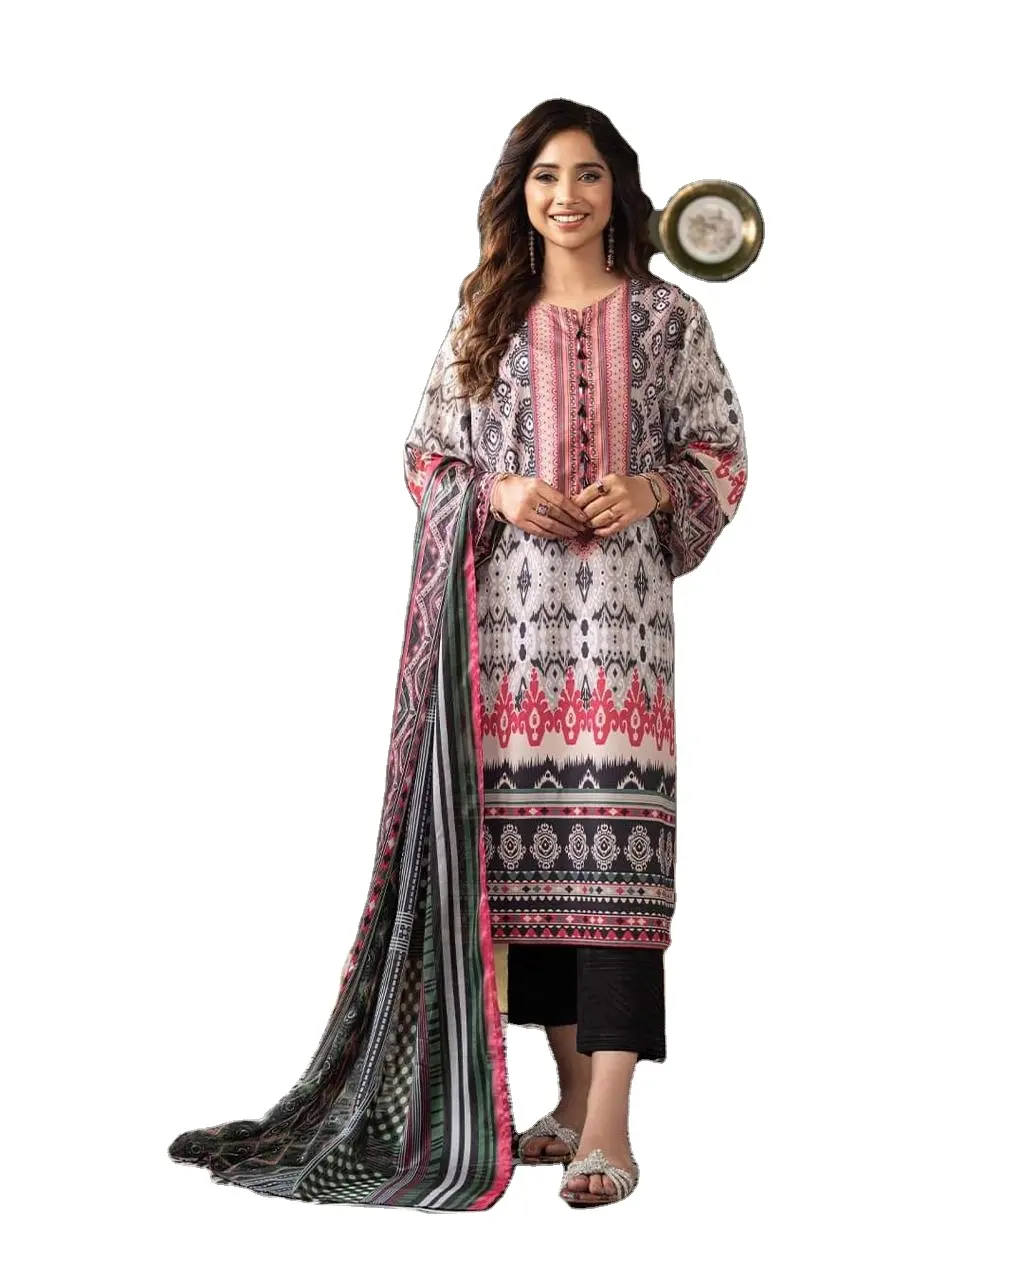 Индийское платье SHALWARN KURTA salwar kameez, чудесный цветной костюм для вечеринки, Лидер продаж, Женский костюм из Пакистана, лидер продаж, индийский летний популярный